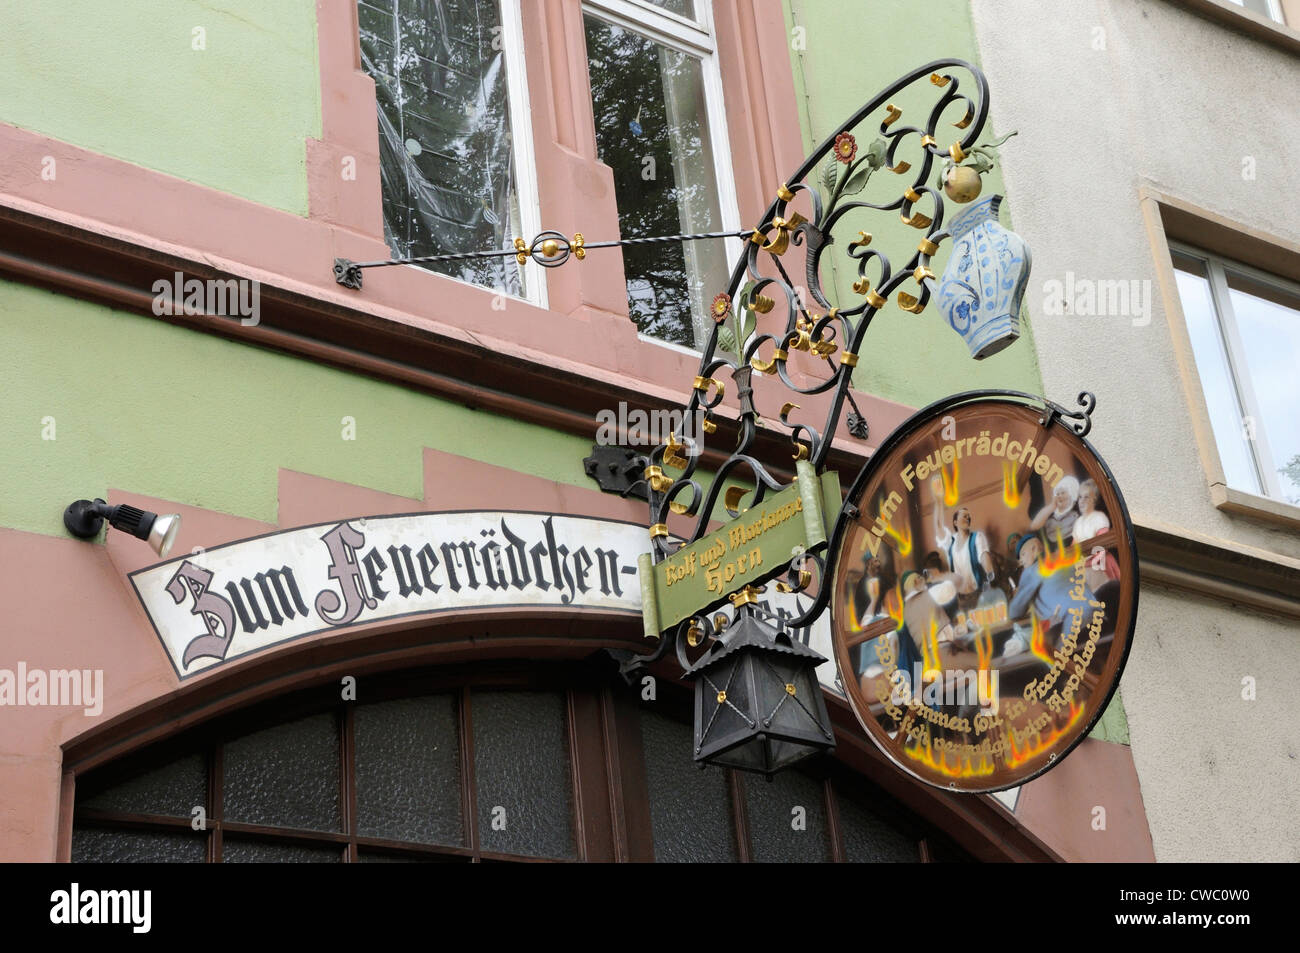 The sign for Zum Fuerradchen cider tavern, Sachsenhausen, Frankfurt, Germany. Stock Photo